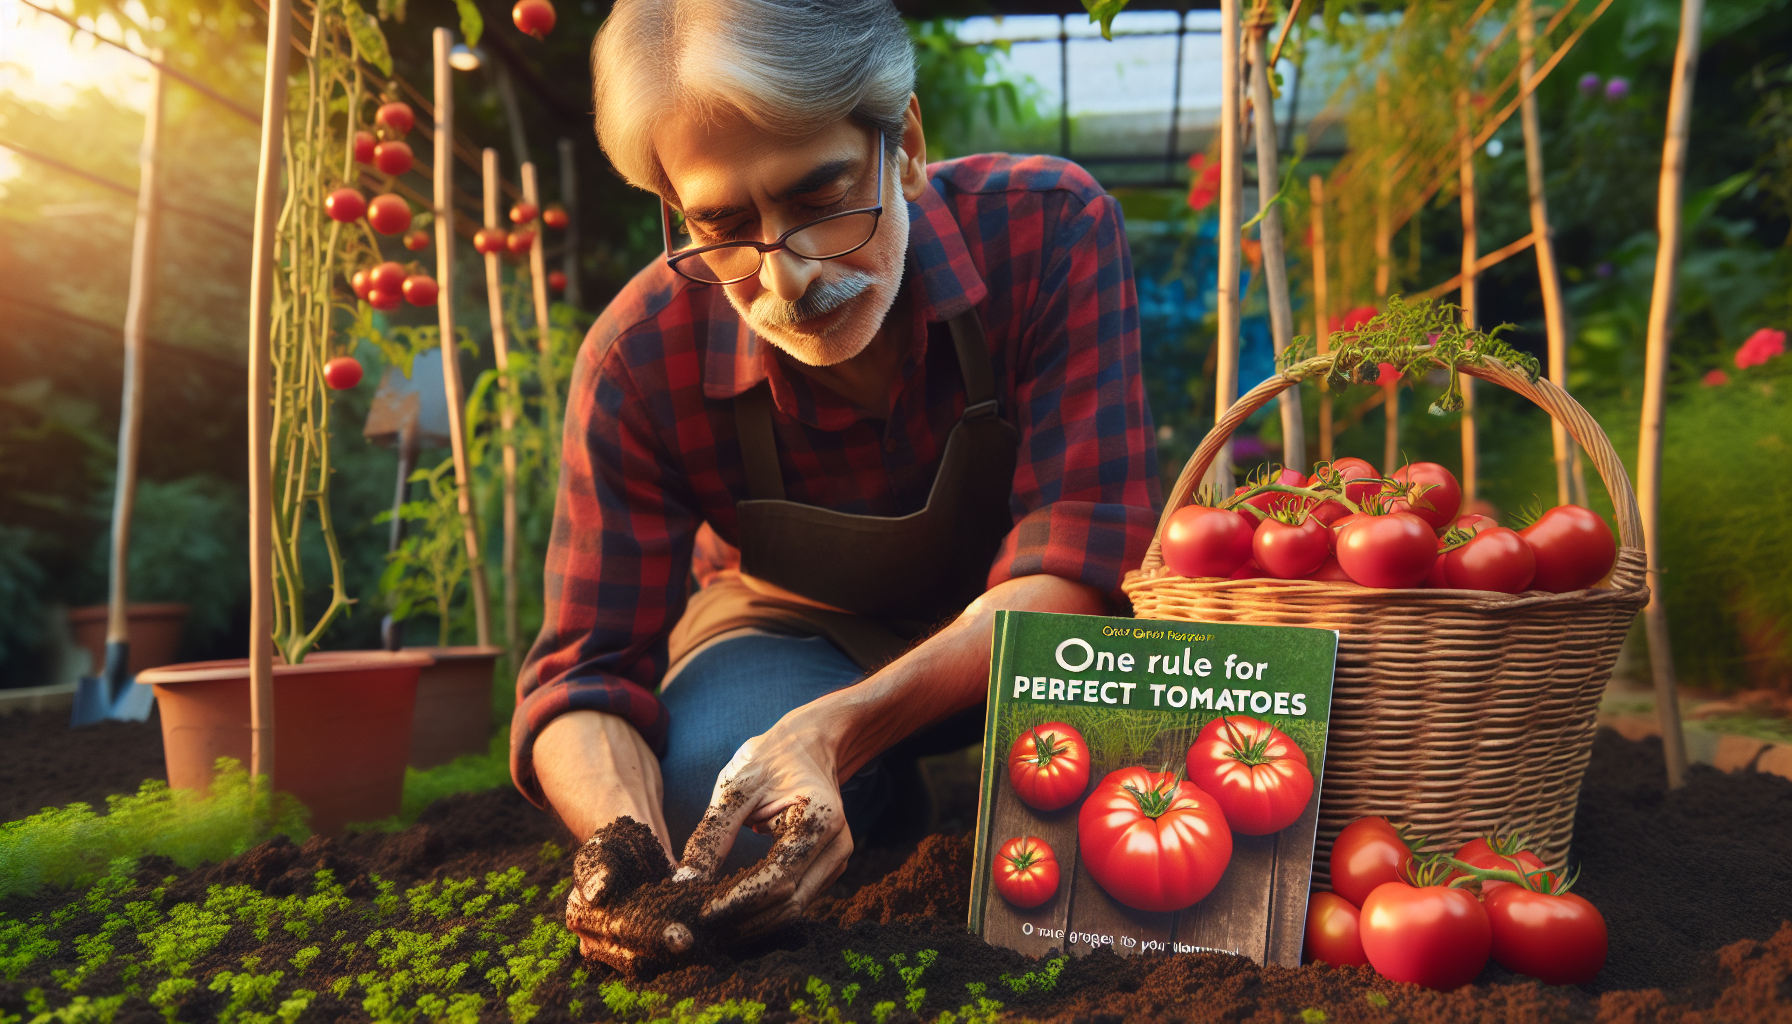 découvrez comment obtenir des tomates parfaites en suivant une seule règle dès la plantation. des conseils et astuces pour cultiver des tomates succulentes.